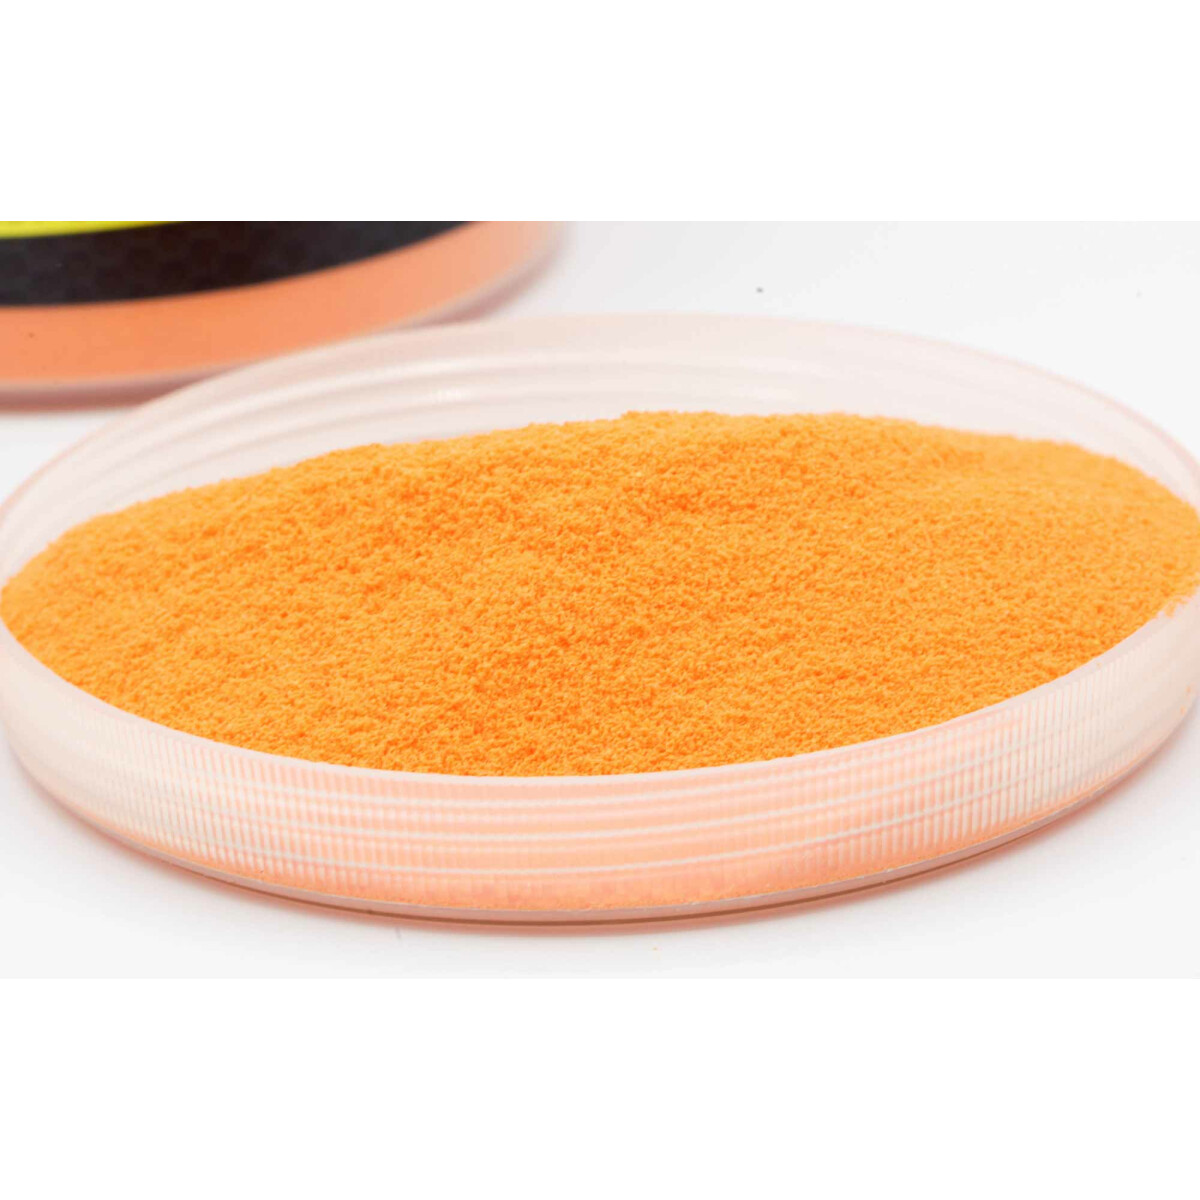 Carpleads Powder Coating - Orange 200 g